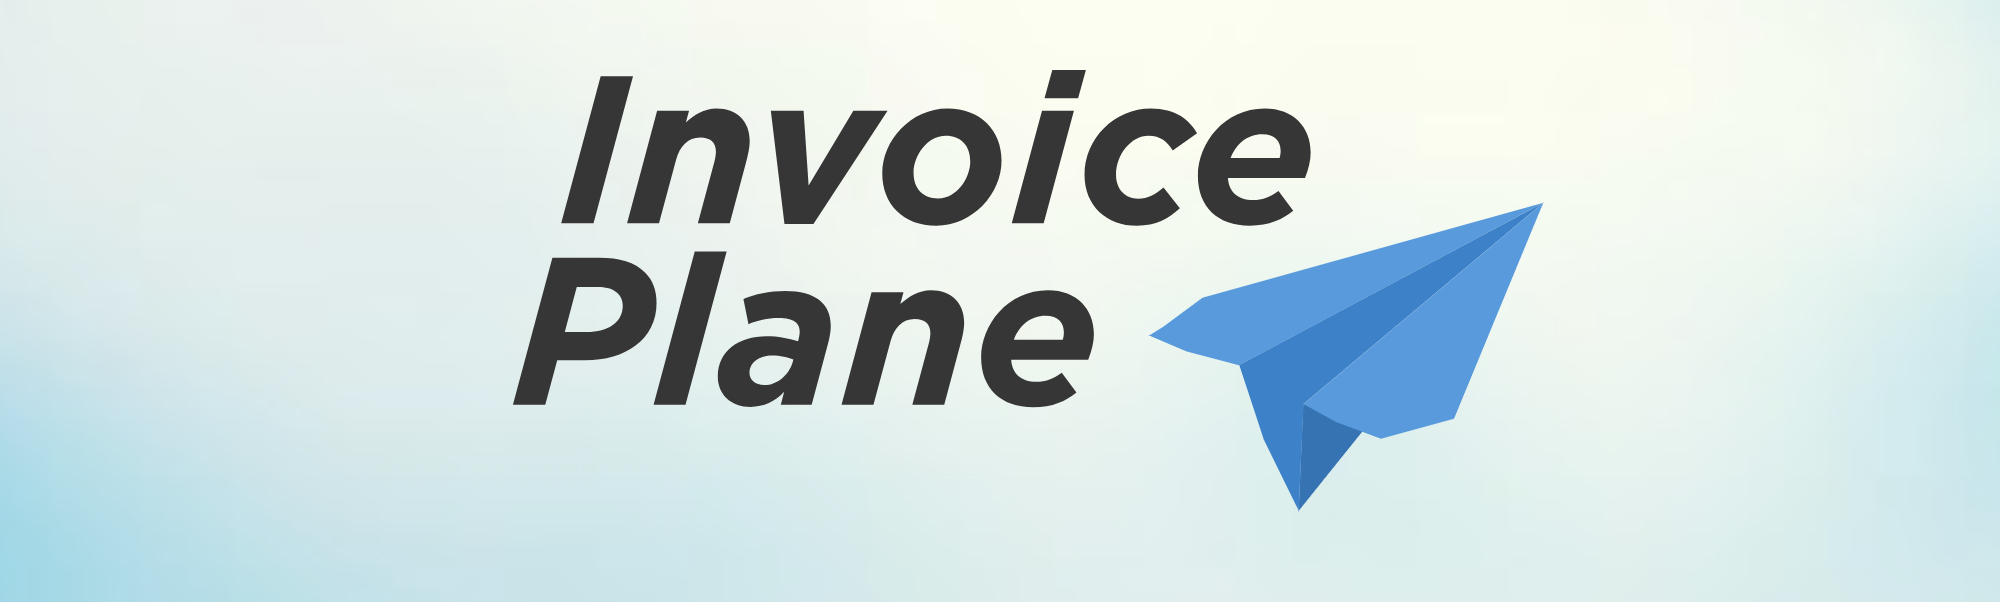 InvoicePlane